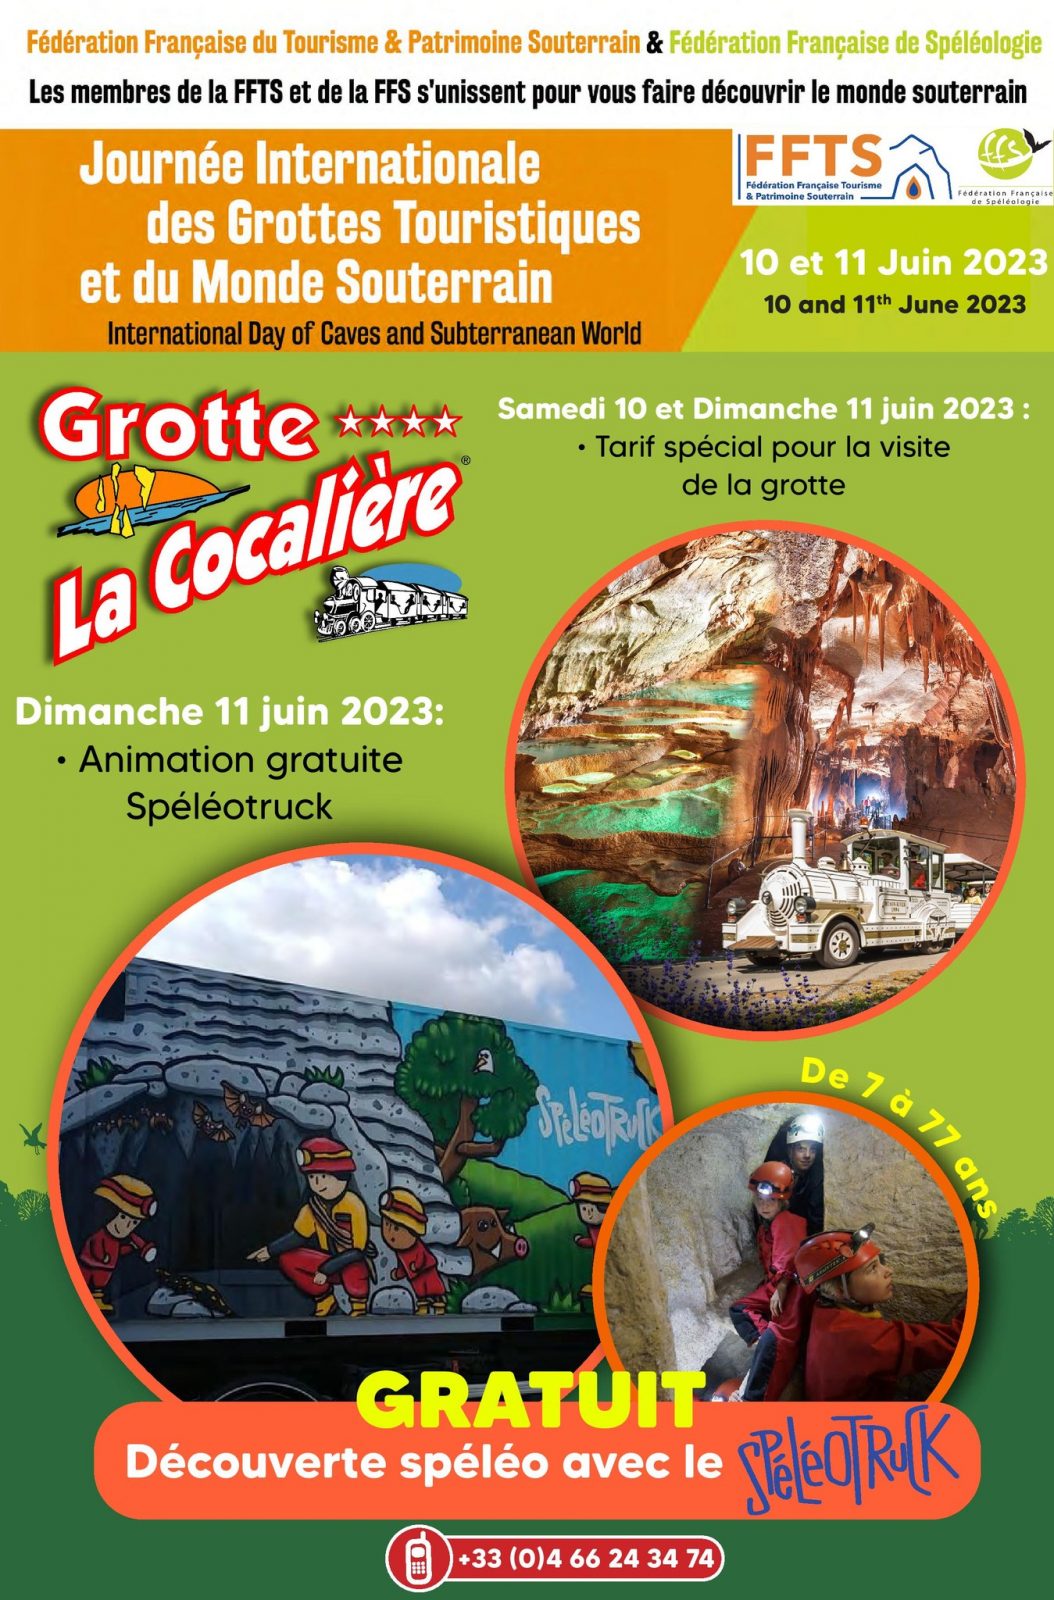 Journée Internationale des Grottes Touristiques et du Monde Souterrain à la Grotte de la Cocaliere